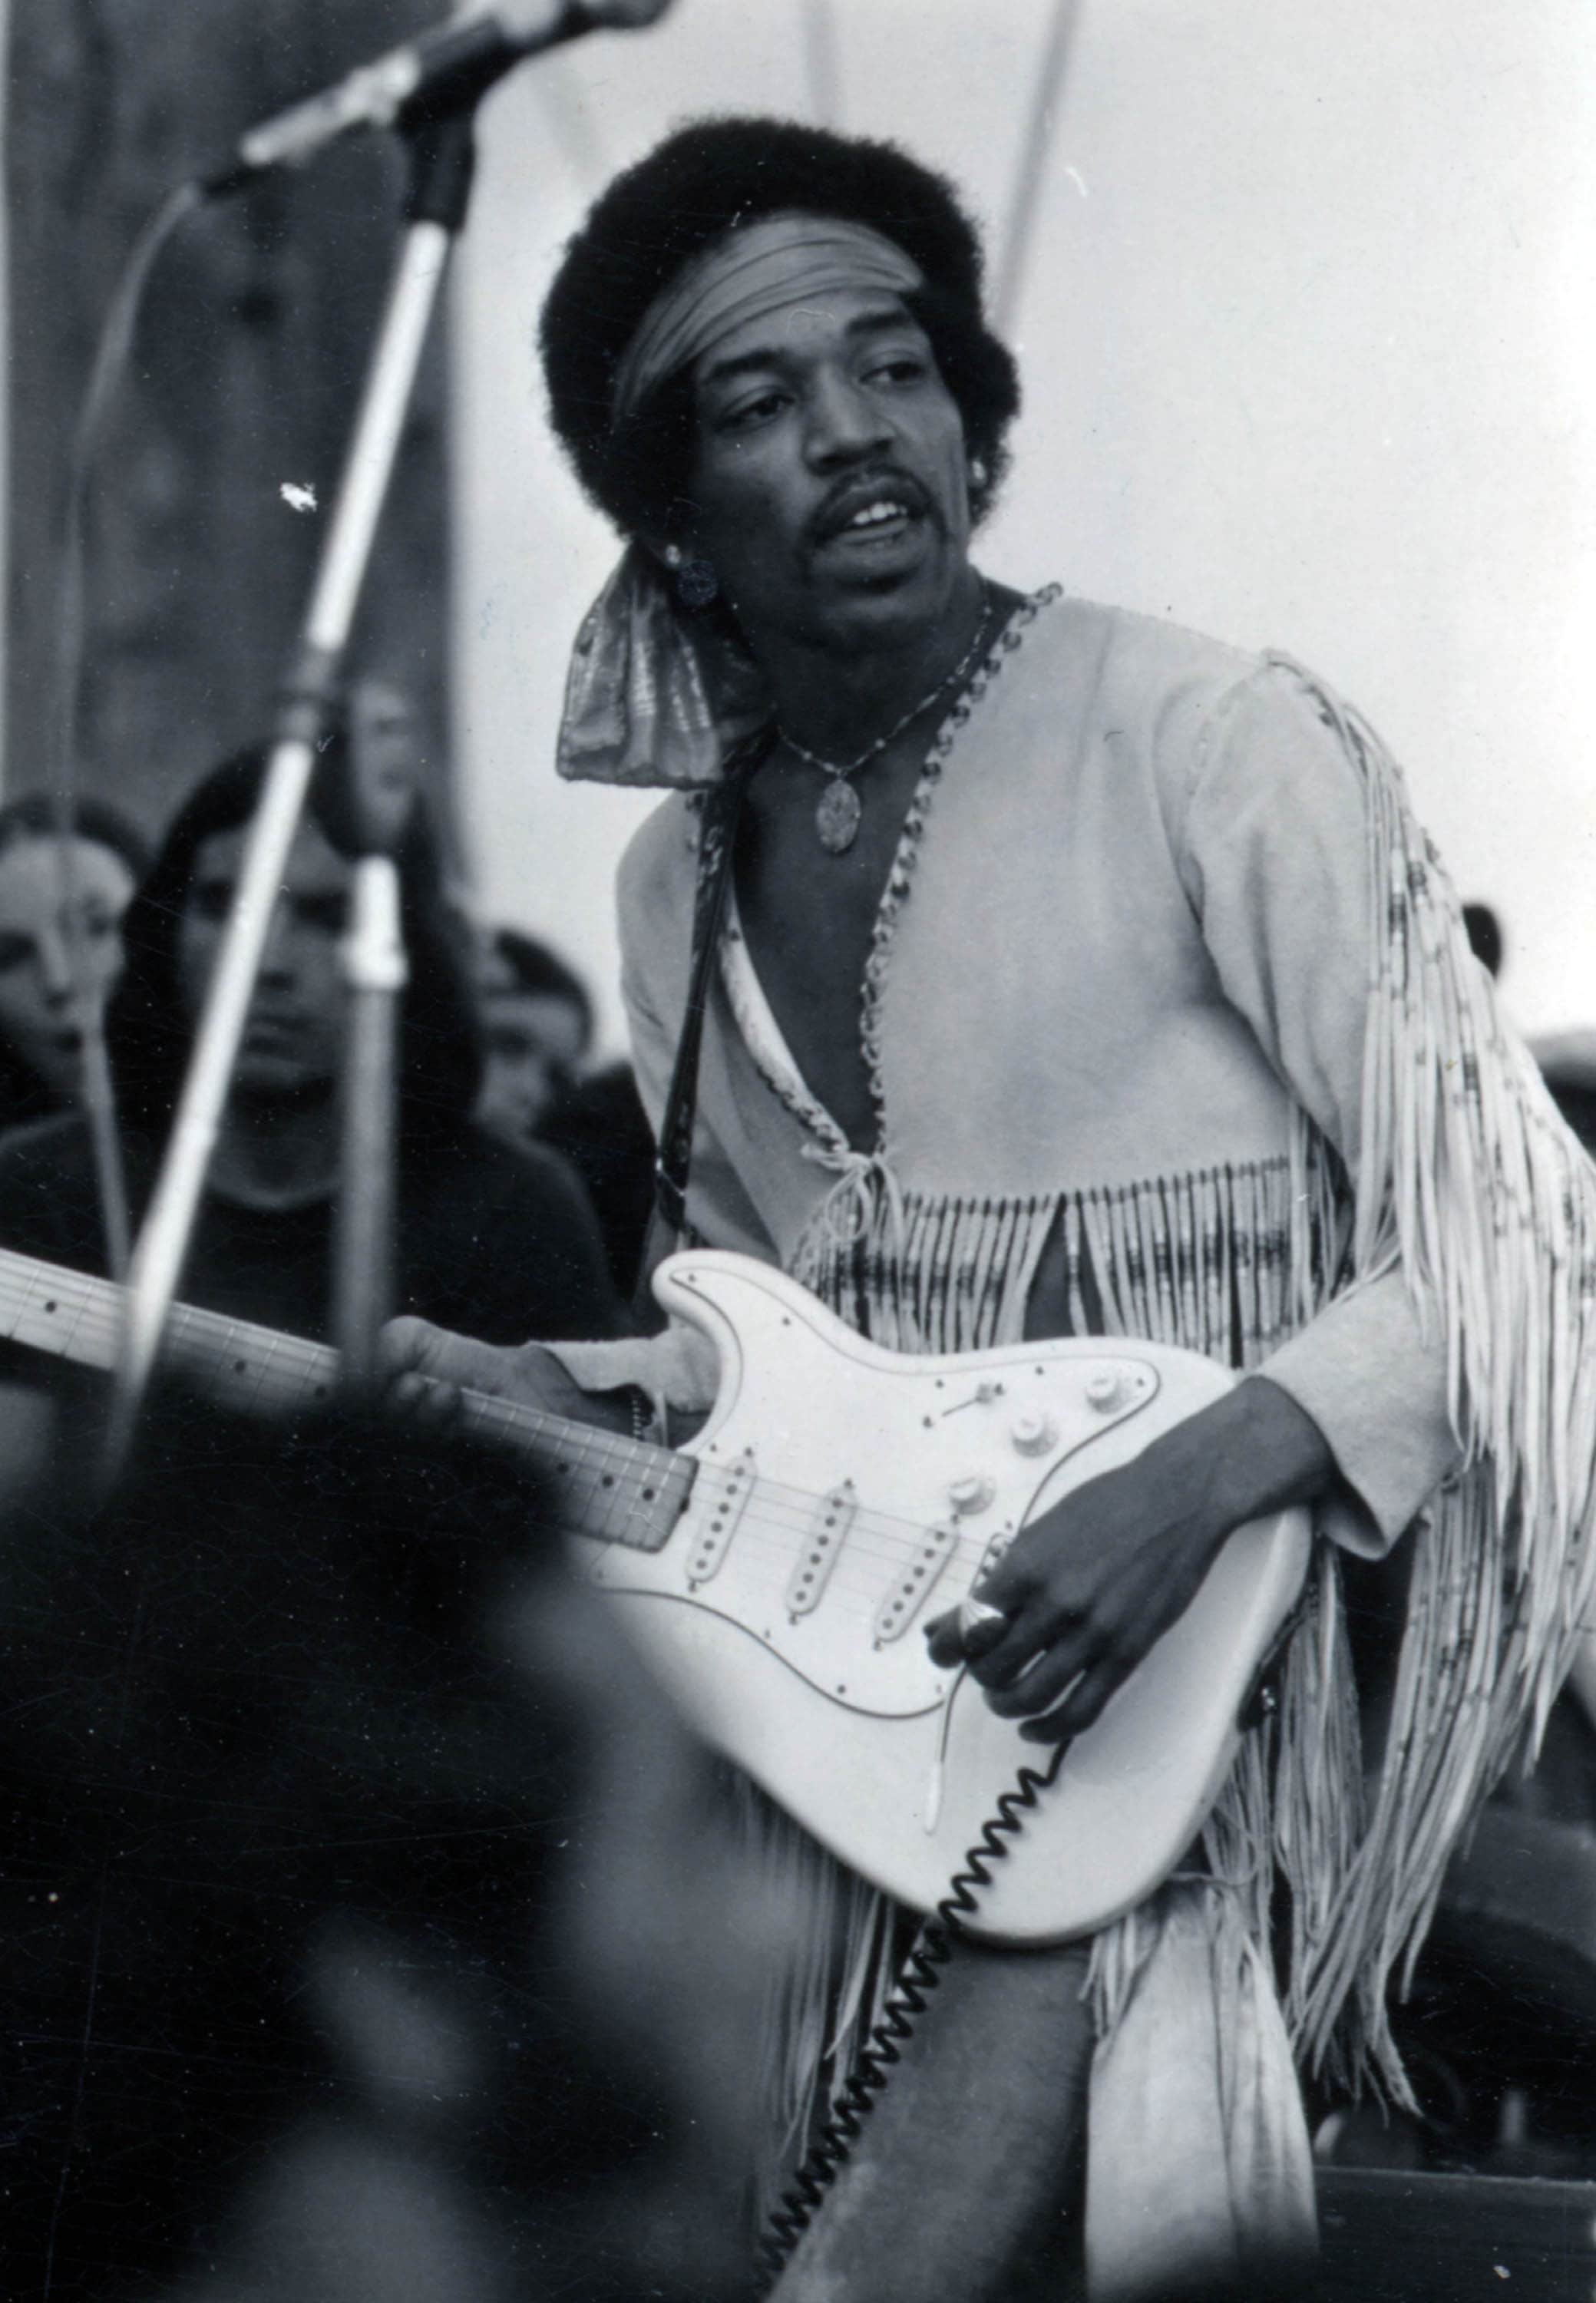 Dopo che la sua band era stata presentata come 'The Jimi Hendrix Experience', Hendrix corresse con il nuovo nome del gruppo: 'Gypsy Sun and Rainbows'. Jimi aveva insistito per essere l'ultimo ad esibirsi al festival, così il suo numero era stato previsto per la mezzanotte, ma non salì sul palco fino alle nove del mattino di lunedì. La maggior parte degli spettatori aveva dovuto lasciare il festival e tornare alla routine dei giorni feriali, così che solo in quasi 200.000 anziché 500.000 ascoltarono Hendrix in una performance che fu una rarità, per la durata (due ore, la più lunga nella carriera di Hendrix). Rimase leggendaria la sua 'Star-Spangled Banner', una reinterpretazione dell'inno degli Stati Uniti eseguita con una tale forza e dei suoni così stranianti che era facile intenderla come la sua protesta per la violenza delle politiche degli USA, nella guerra in Vietnam e negli scontri sociali.